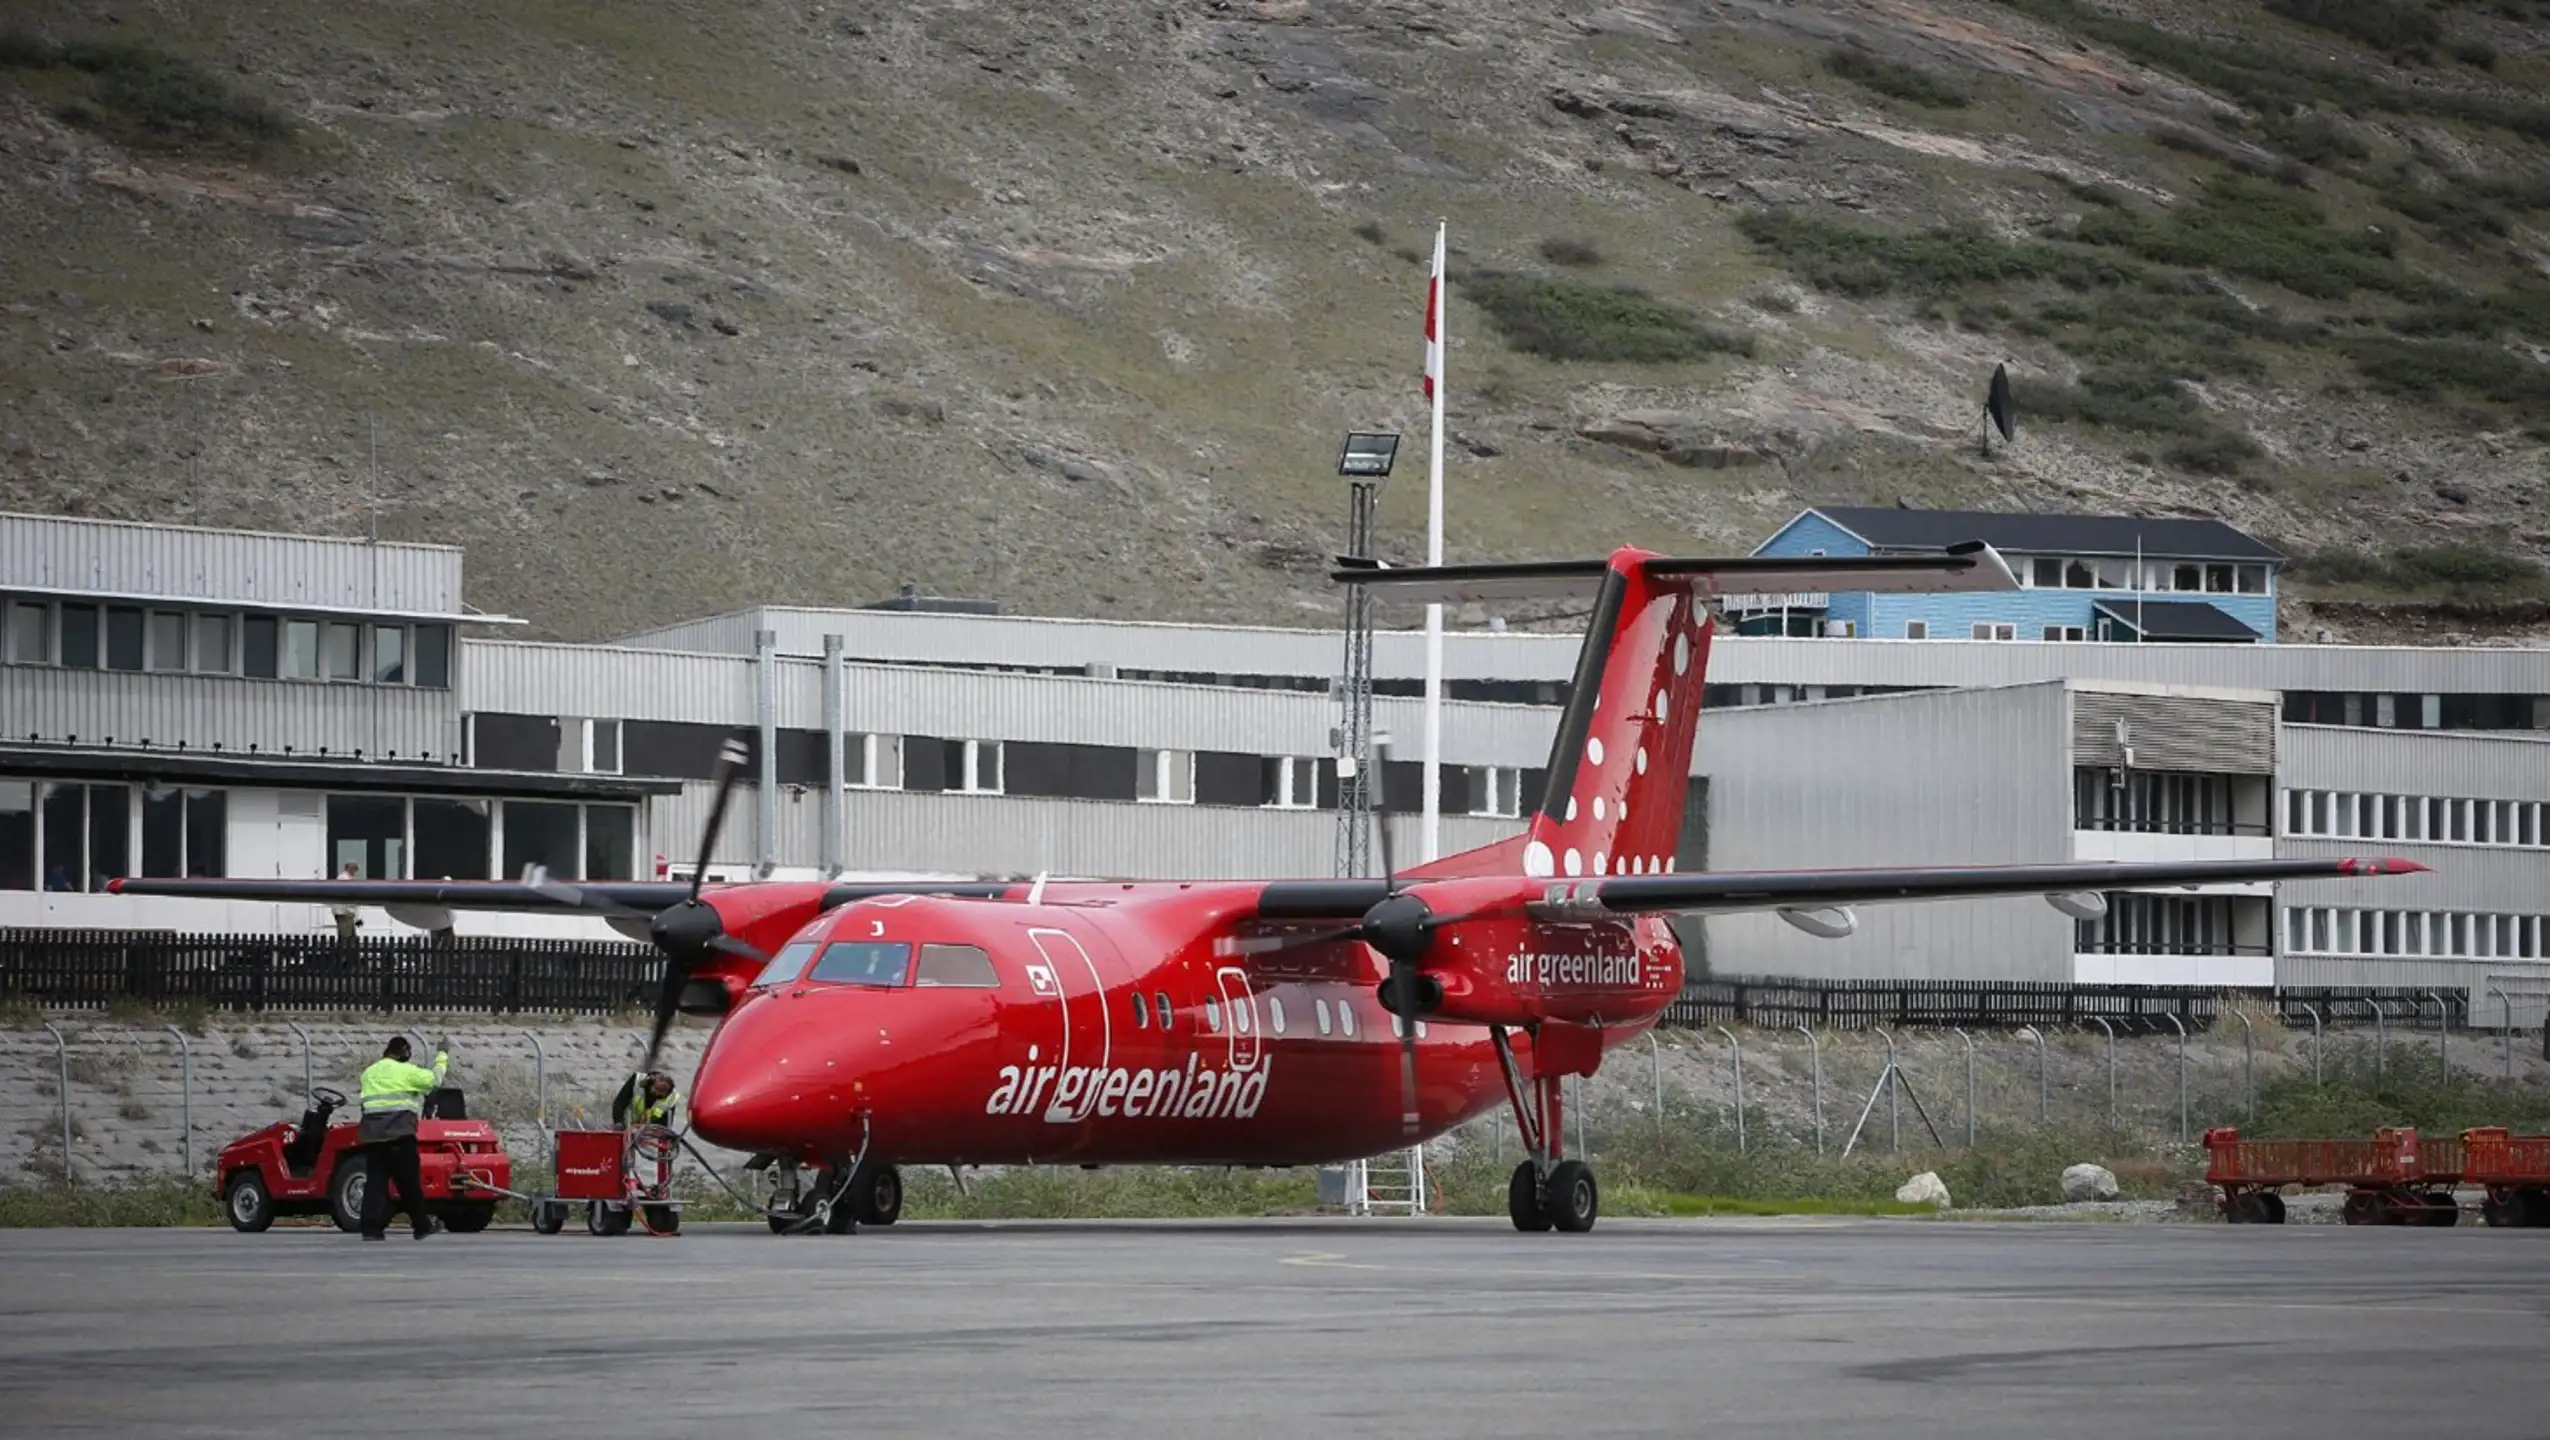 Air Greenland's Dash 8-Q200